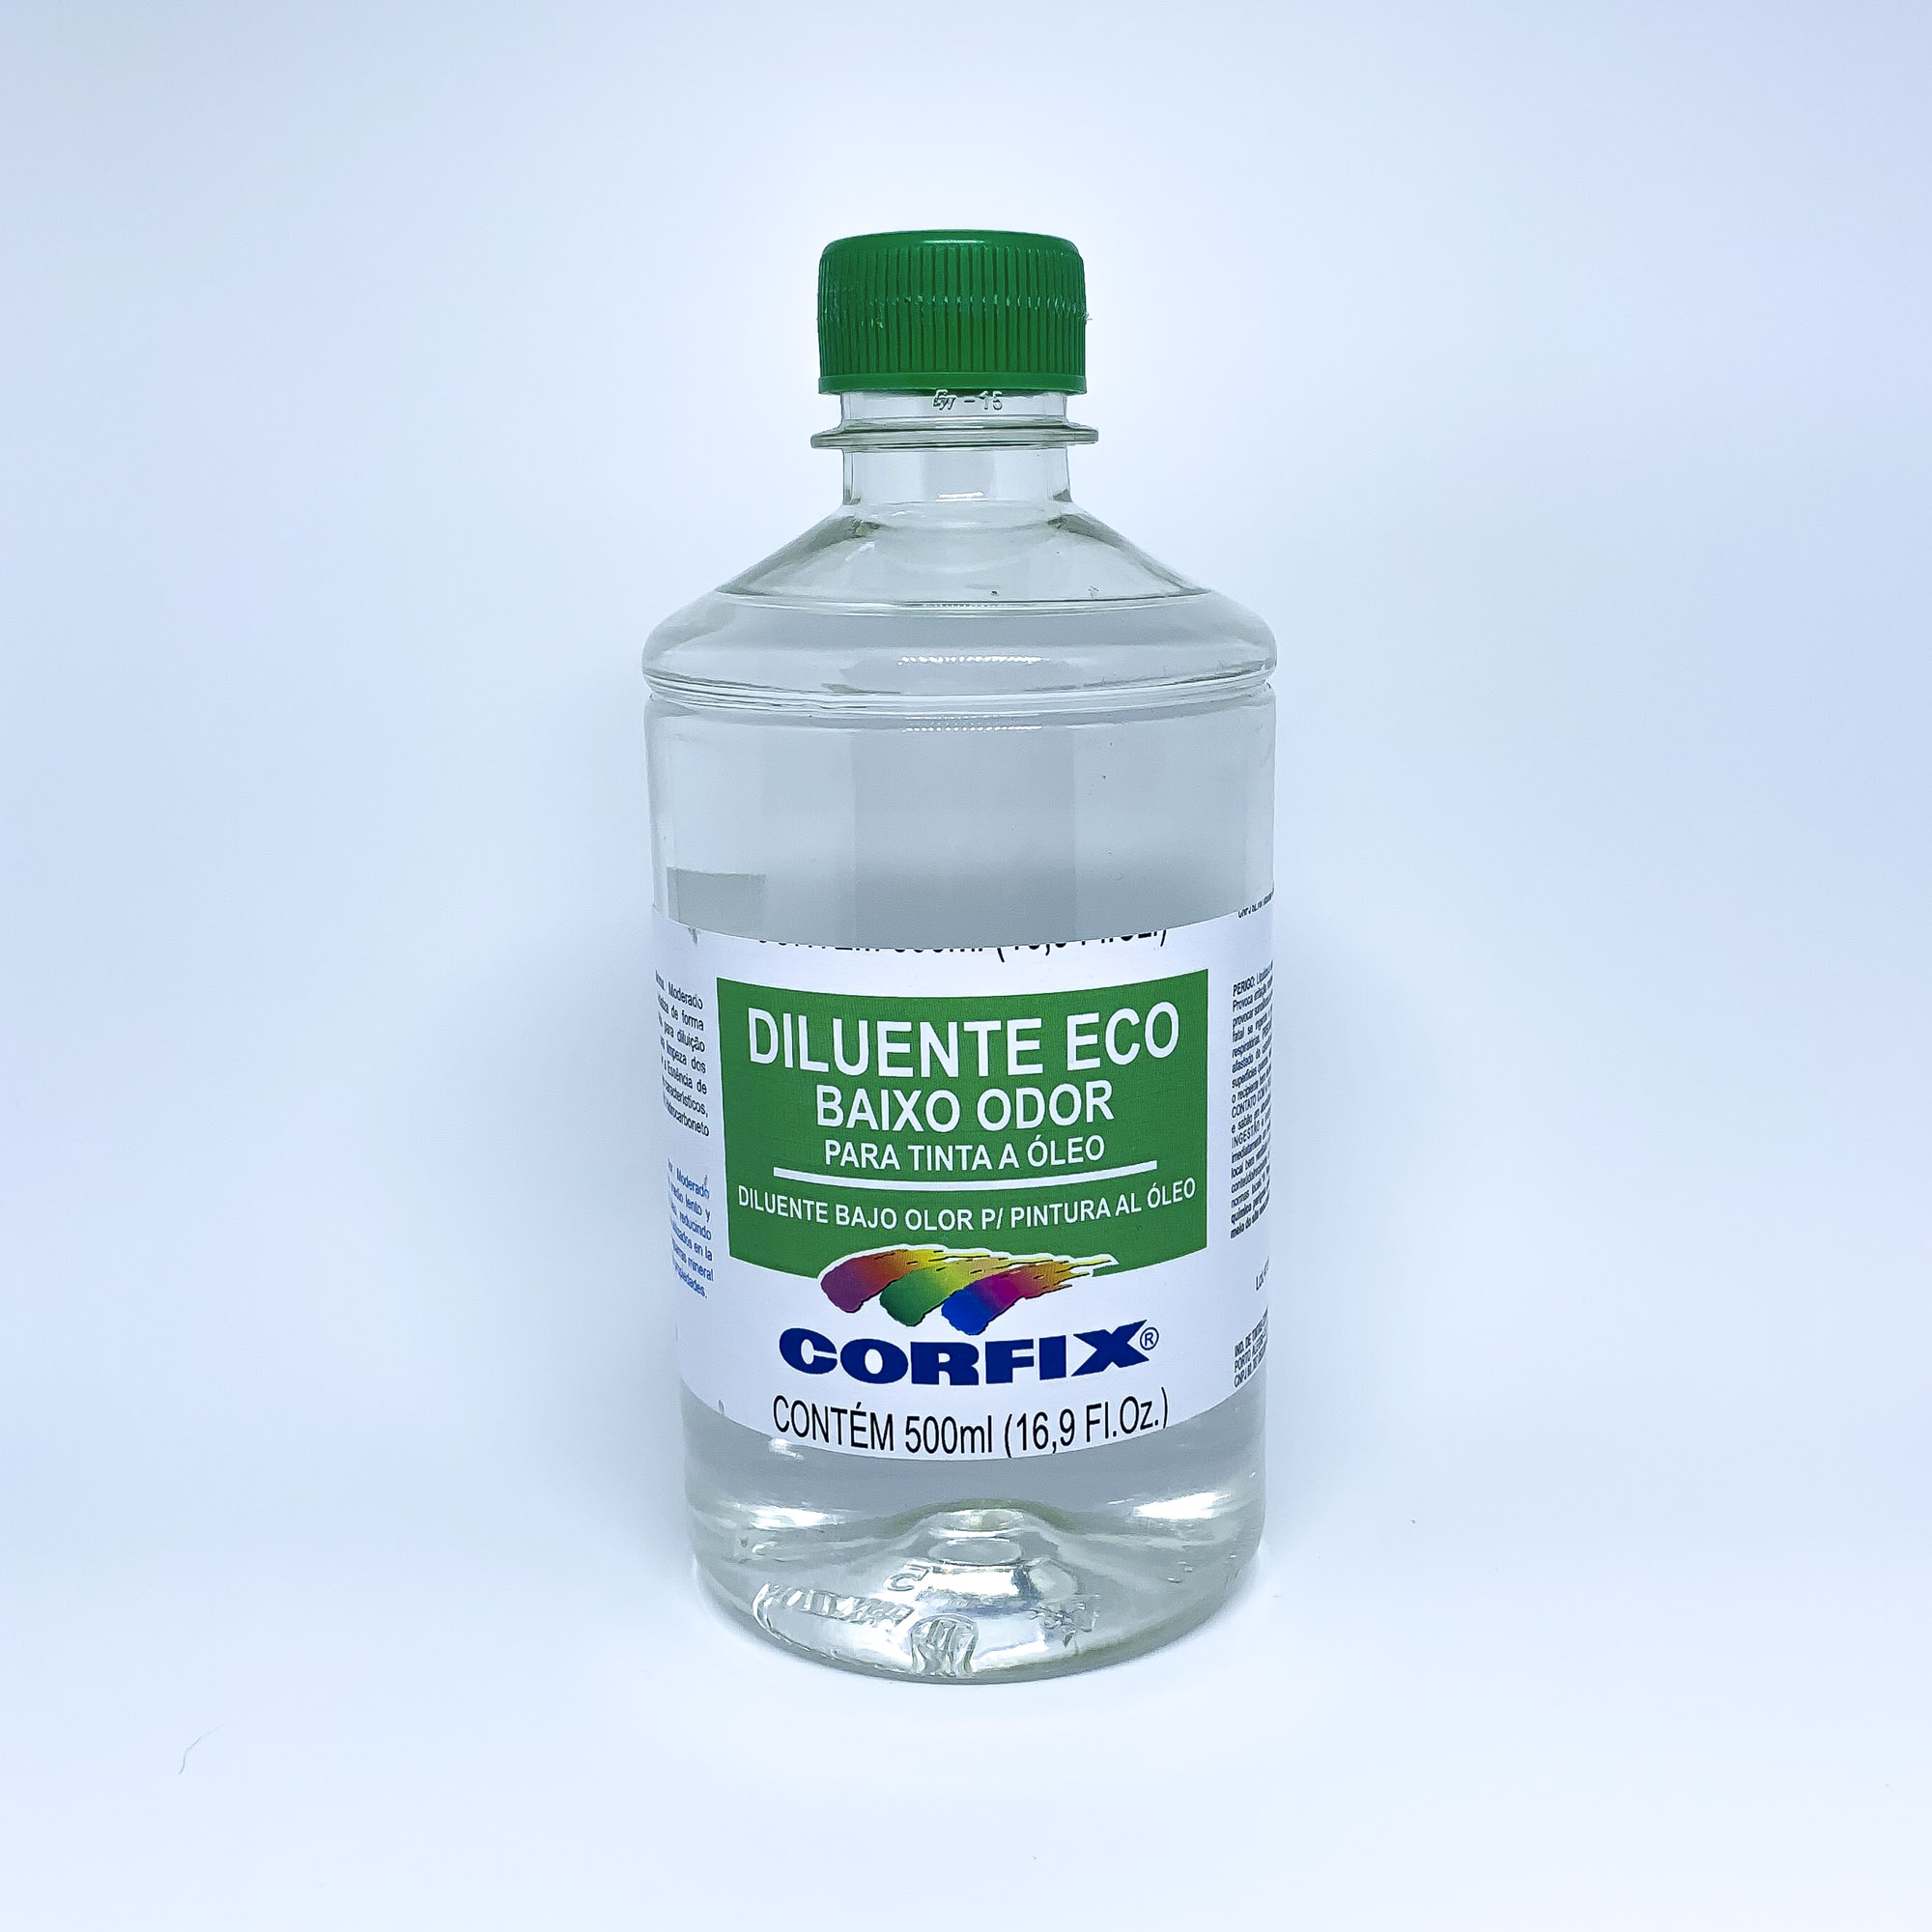 Diluente Eco Baixo Odor 500ml Corfix